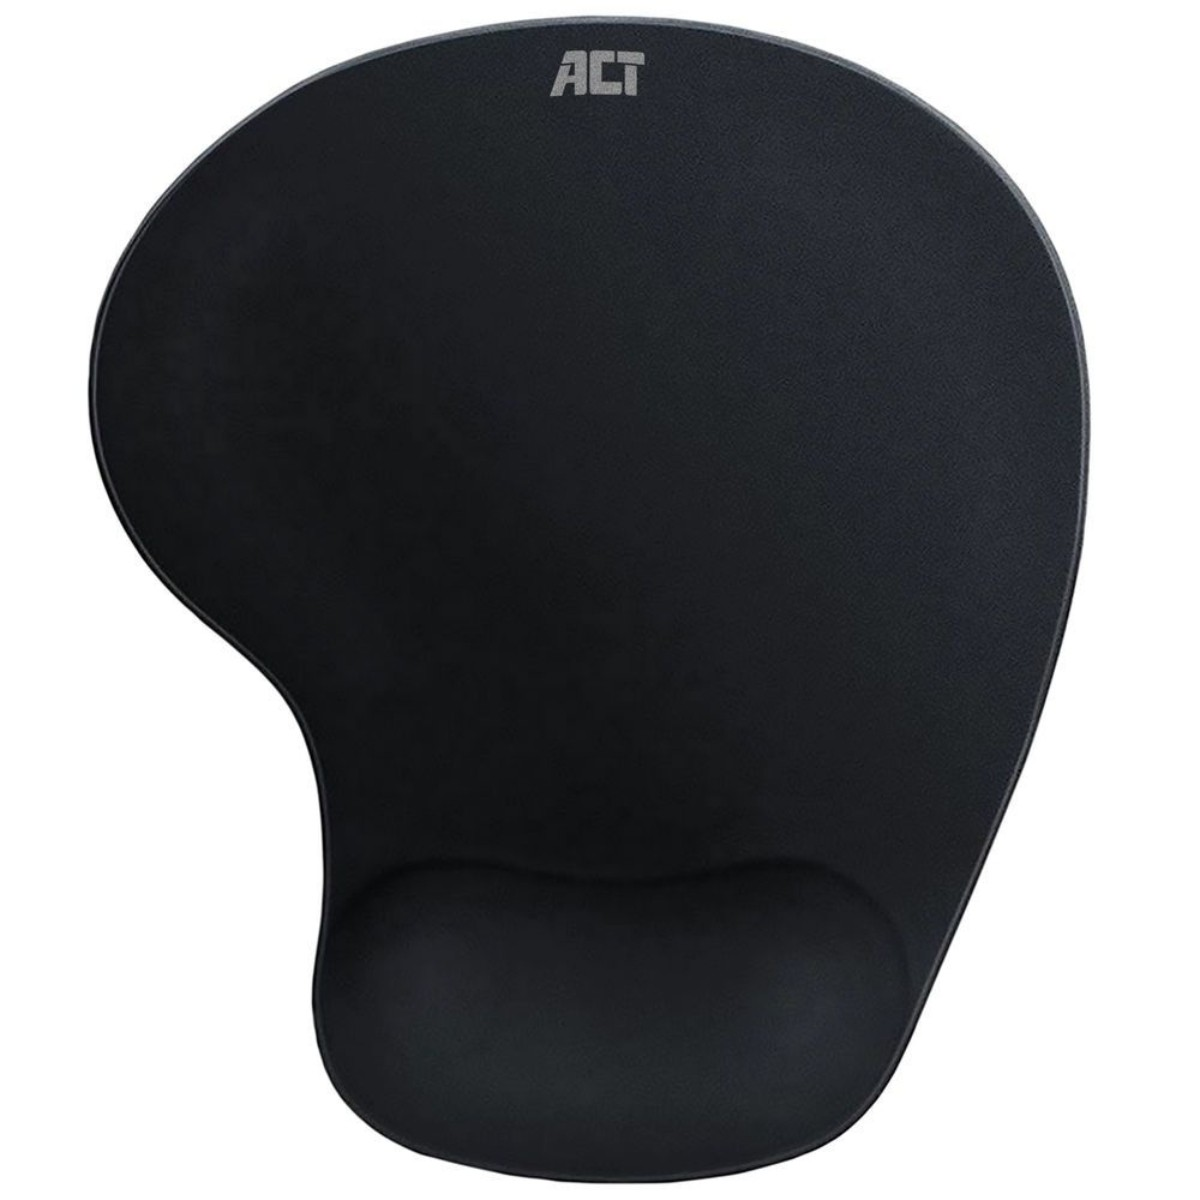 ACT AC8010 Mauspad x cm) cm (24 21 Ergonomisches